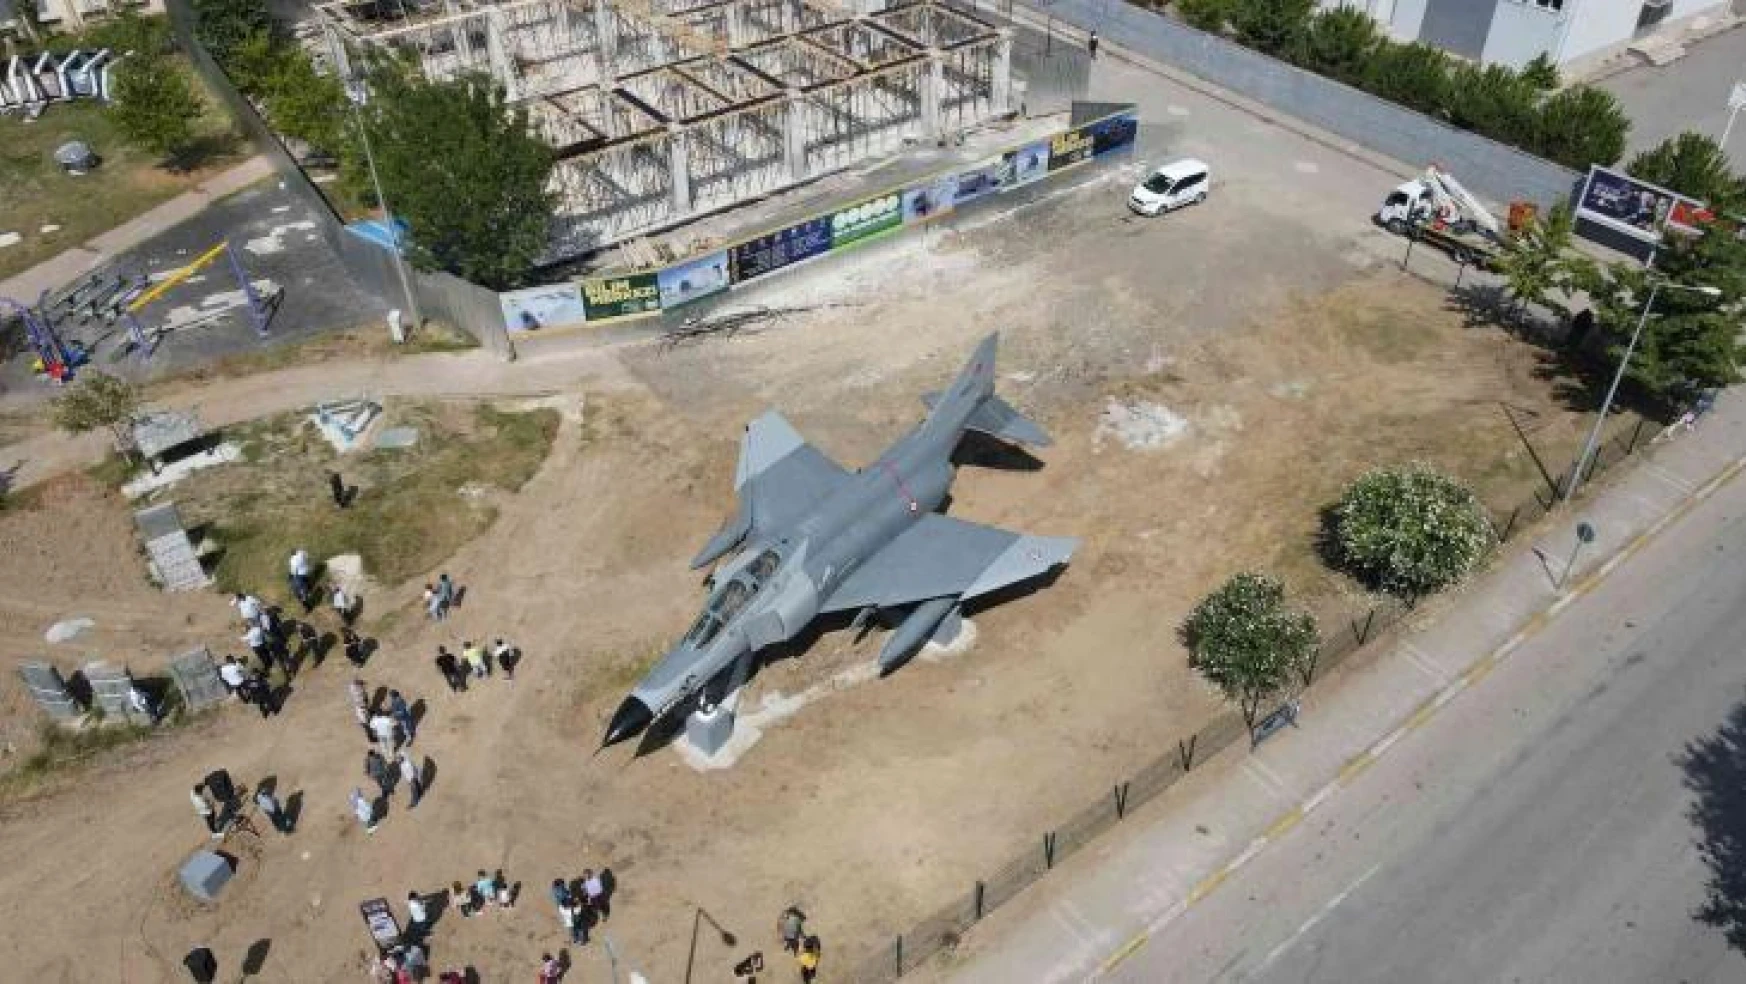 Türkiye'de ilk kez karadan yürütülen F4 savaş uçağı Bilim Merkezi'ne yerleştirildi